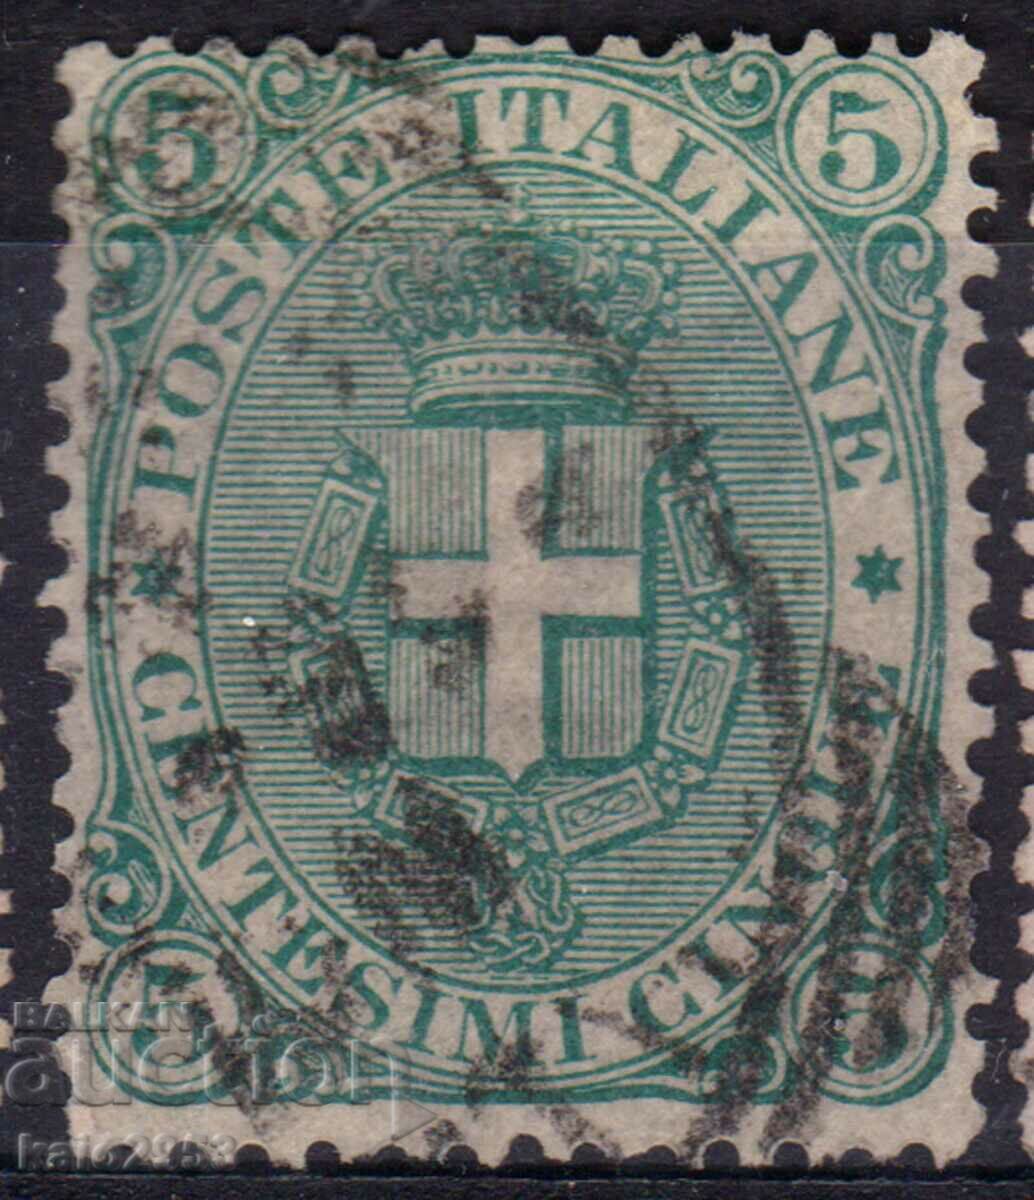 Βασίλειο της Ιταλίας-1896-Οικόσημο του Κανονικού Κράτους, σφραγίδα